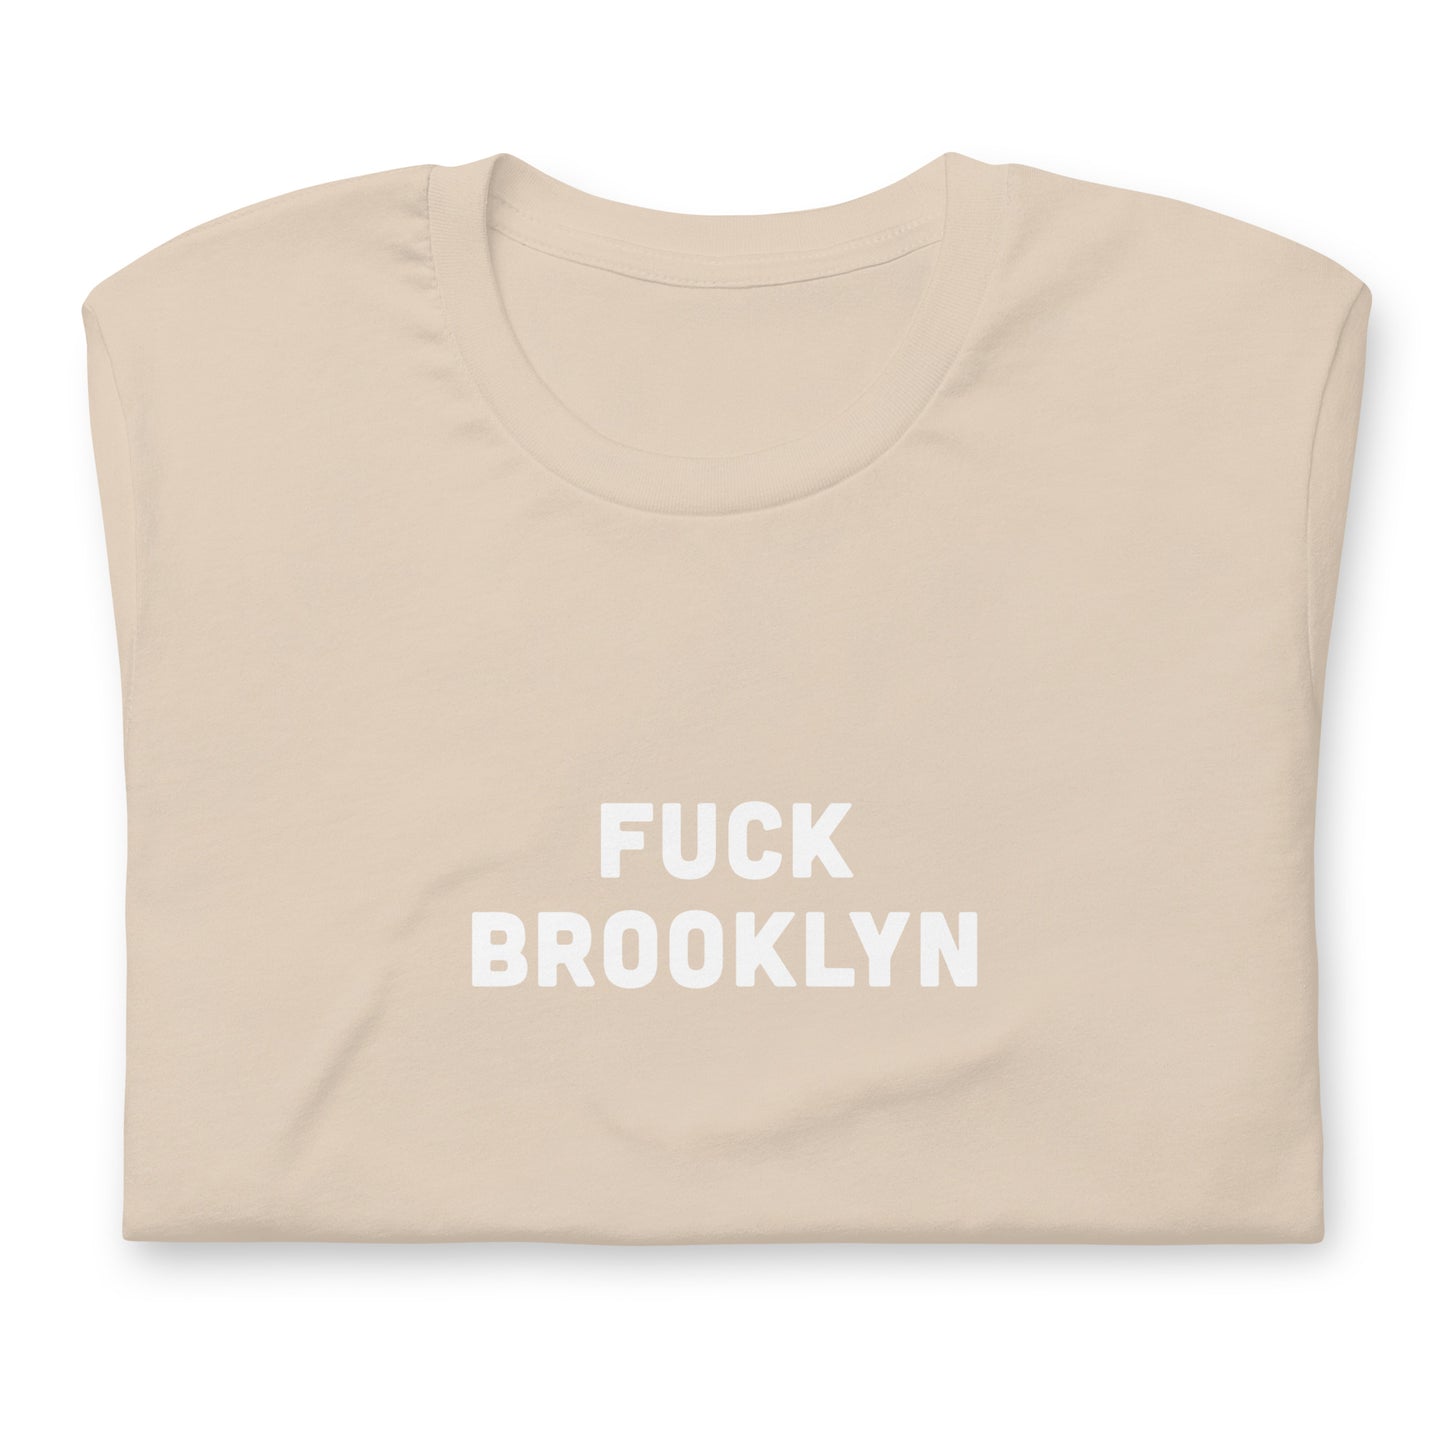 Fuck Brooklyn T-Shirt Size L Color Asphalt